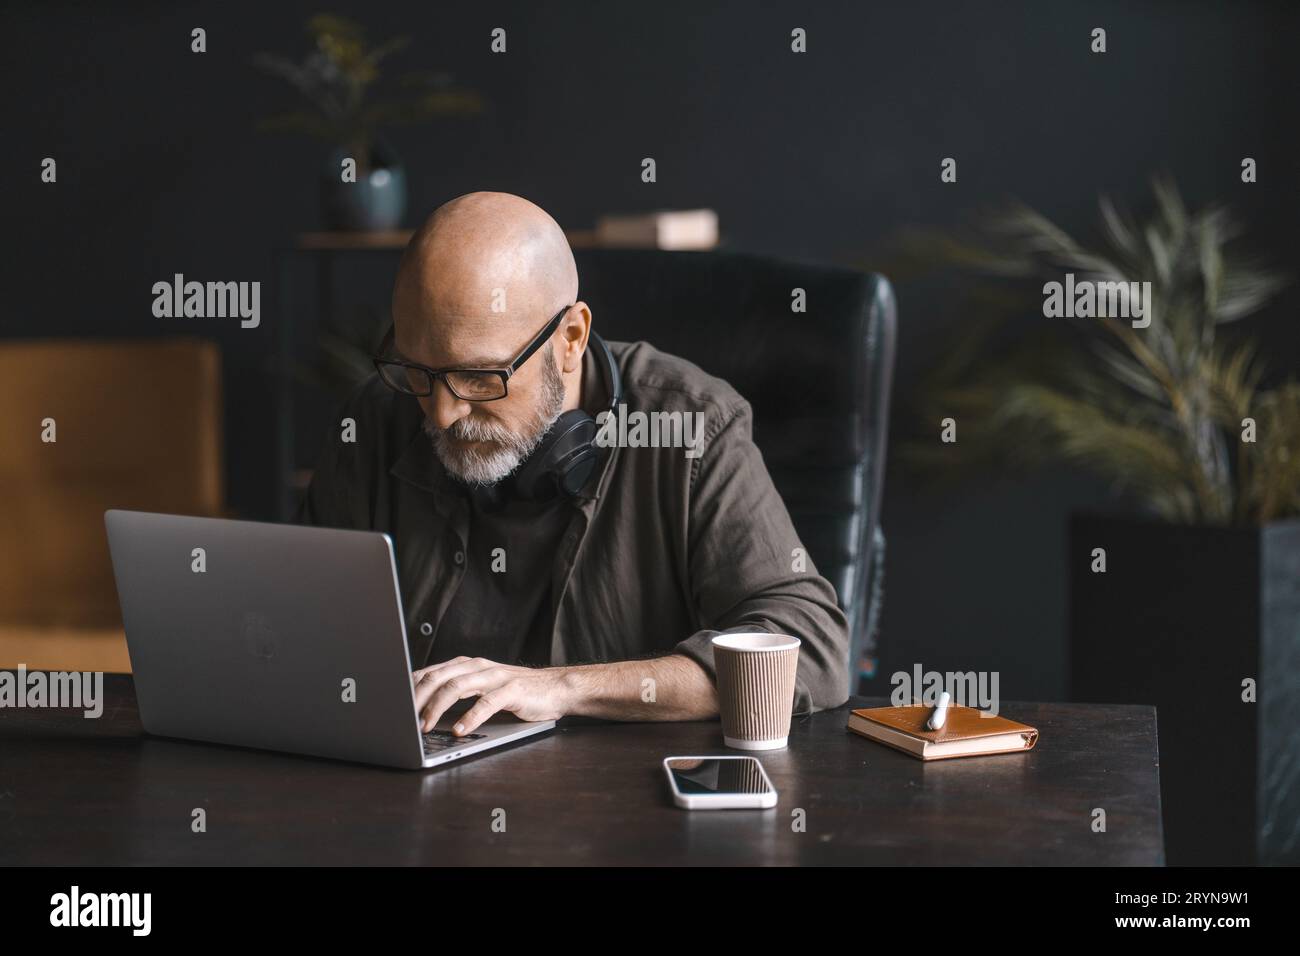 Concept de travailleur acharné, un homme d'âge mûr dévoué passe la journée immergé dans le travail, utilisant assidûment l'ordinateur portable avec concentration et détermination Banque D'Images